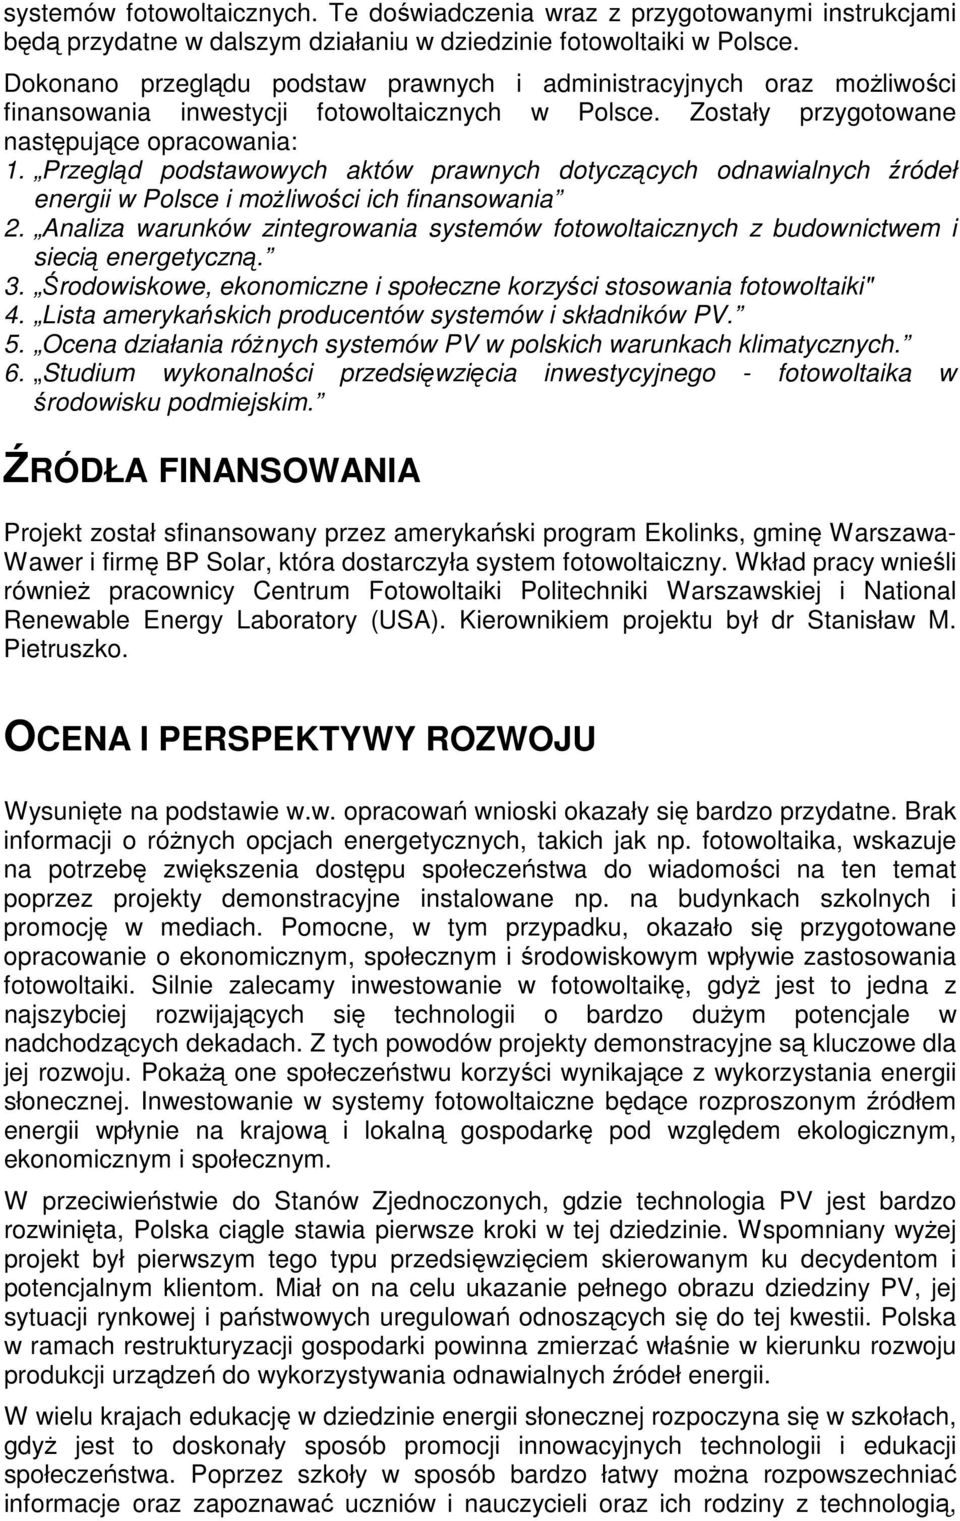 Przegląd podstawowych aktów prawnych dotyczących odnawialnych źródeł energii w Polsce i możliwości ich finansowania 2.